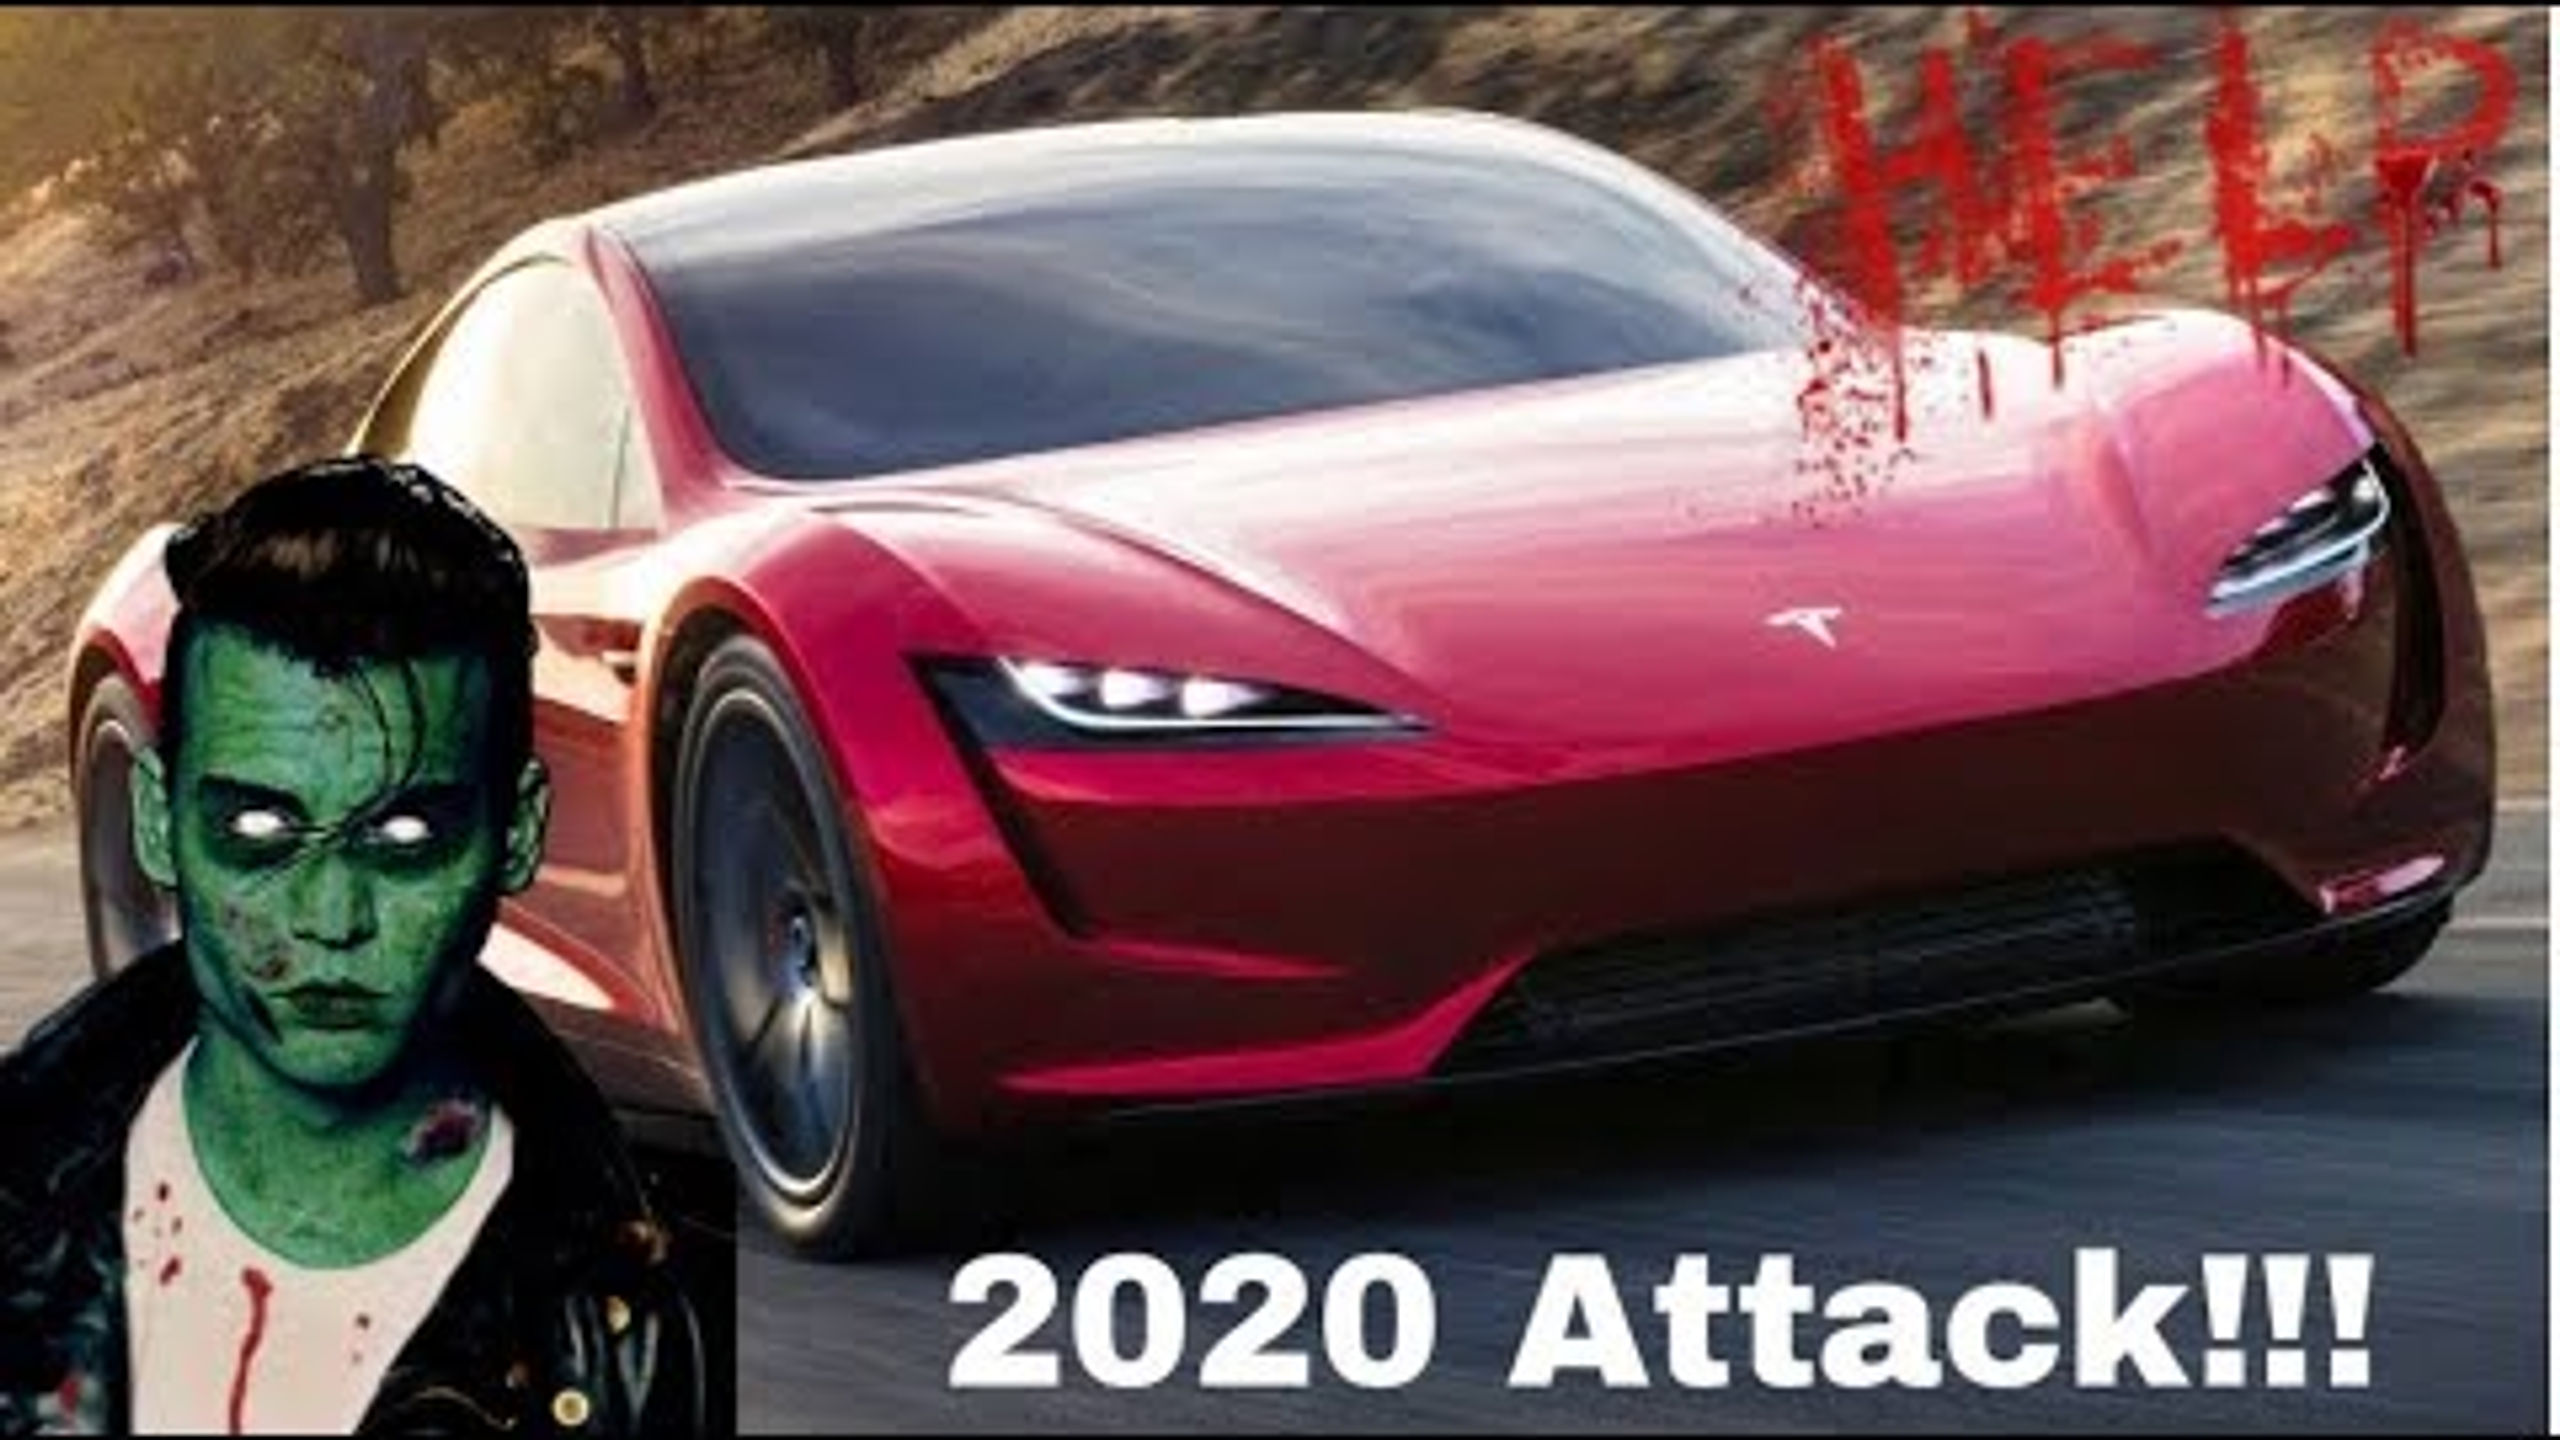 2020 Attack!